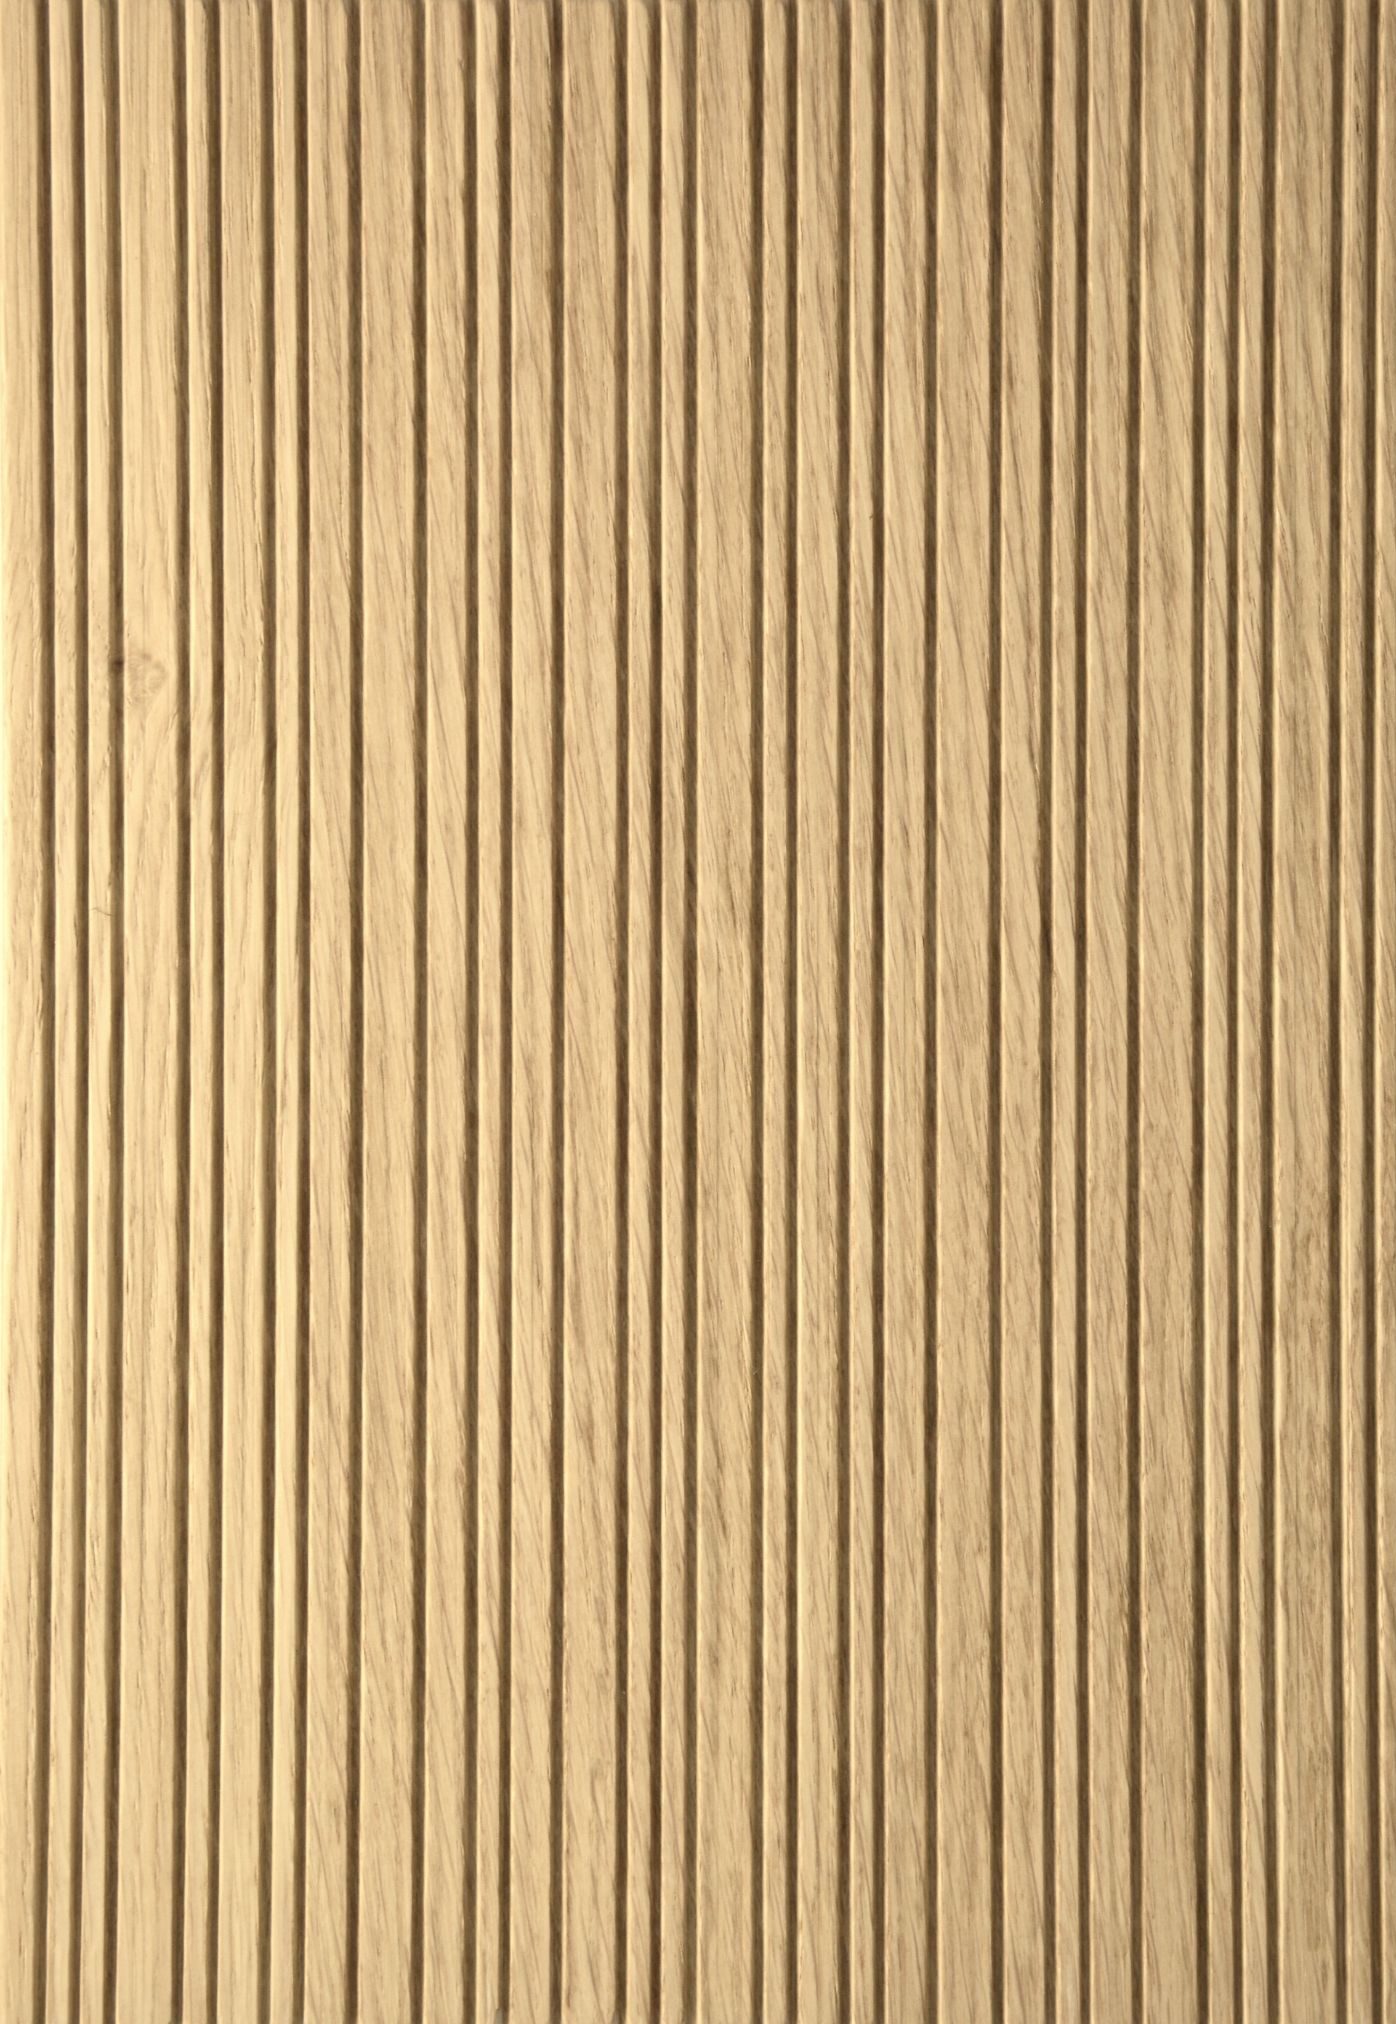 2670 - Lines - Knob Oak - Real wood veneer